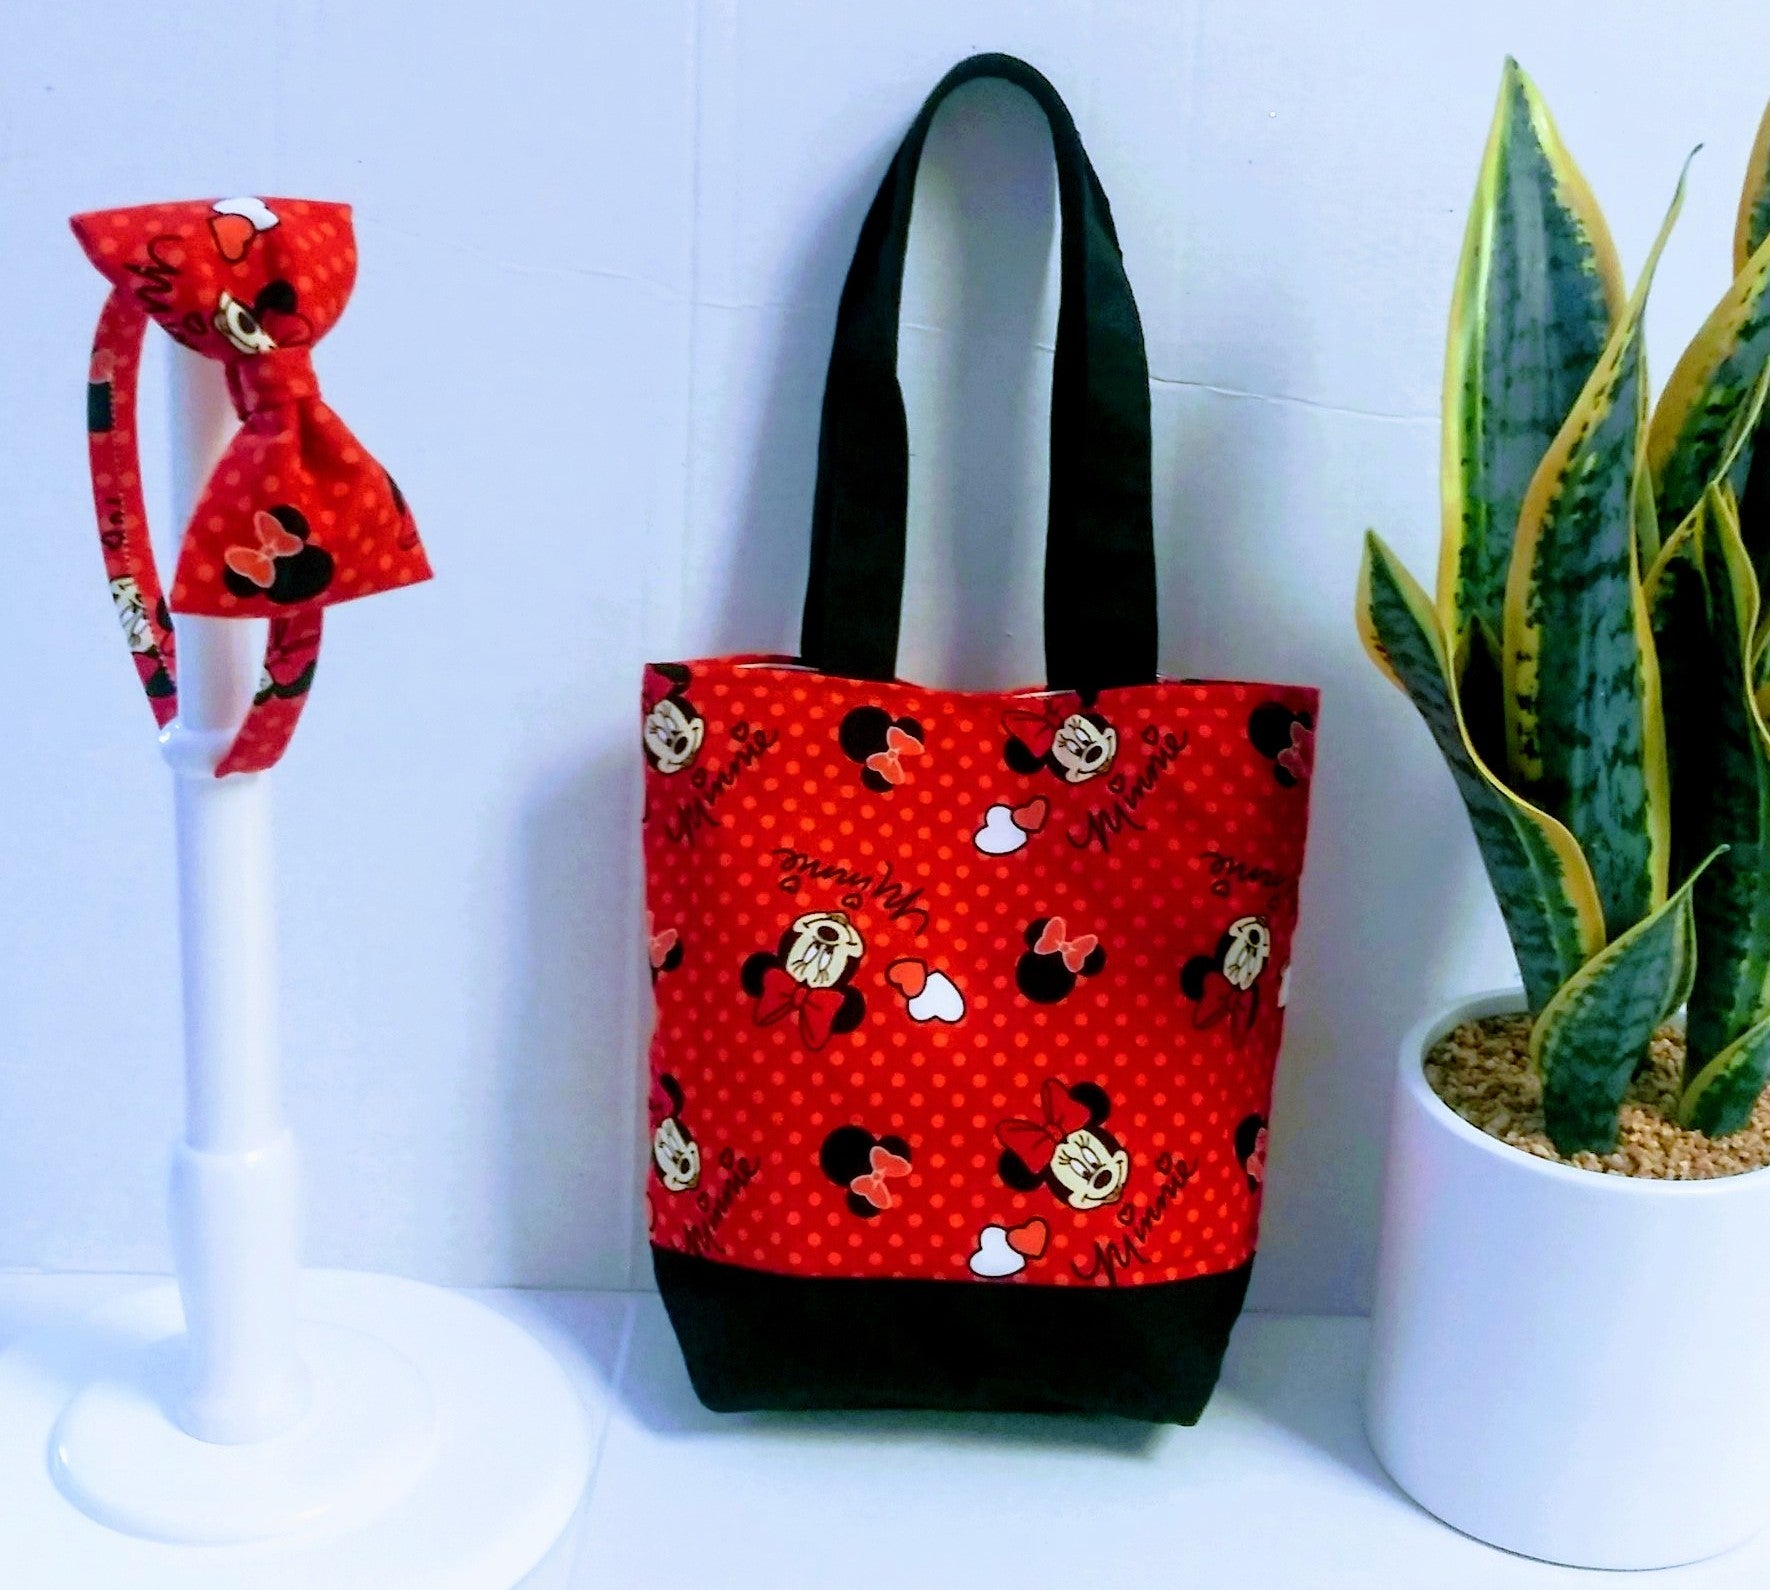 DN Enterprises Latest Trendy Stylish Tote Bag/Sling Bag/Handbags for Girls/Women`s(sky  blue)